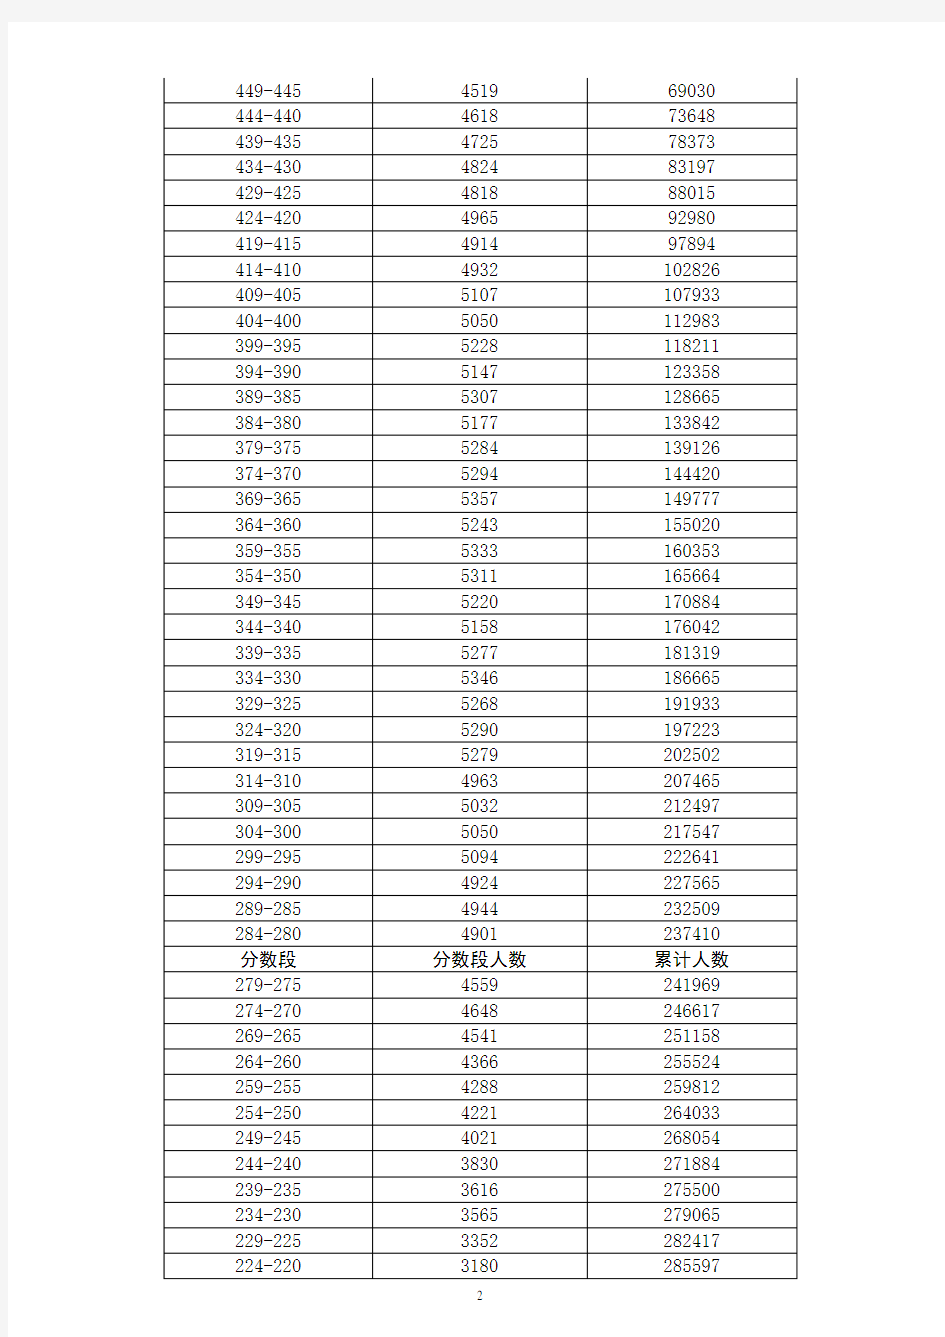 广东省2017年普通高考考生成绩各分数段数据